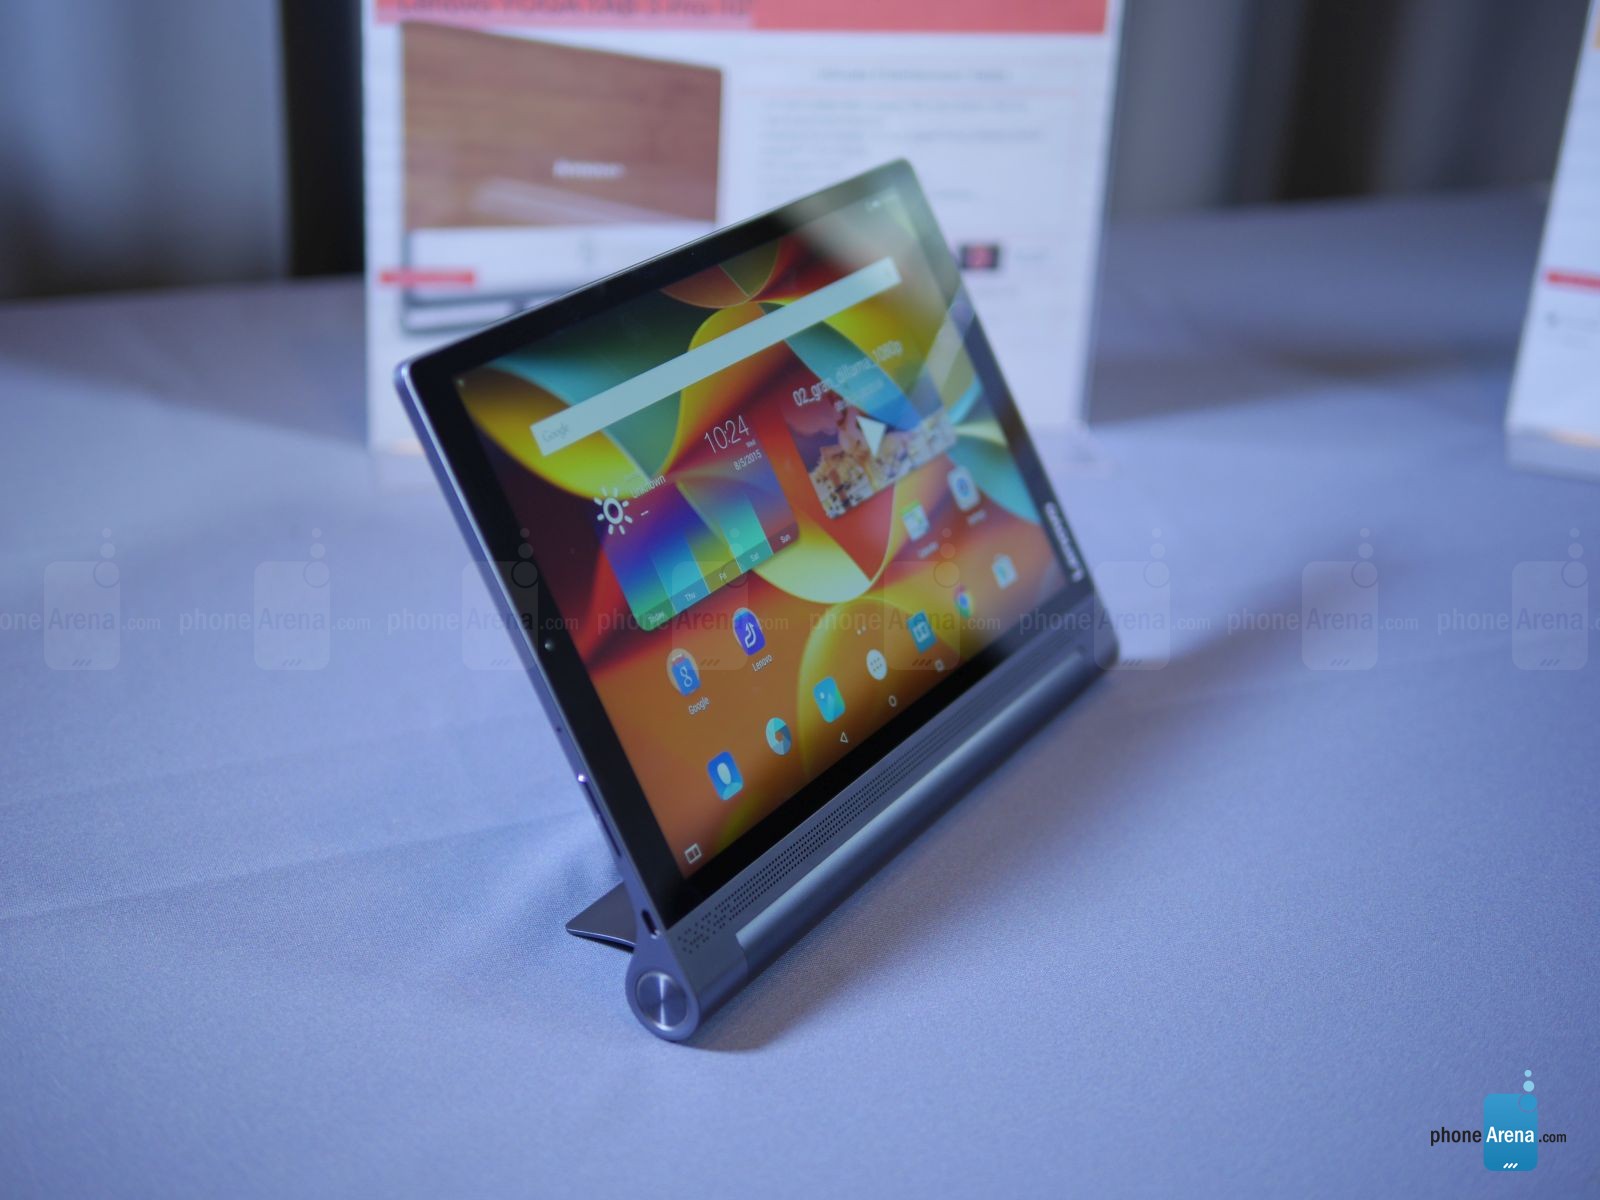 Ini tablet terbaru Lenovo yang dilengkapi dengan proyektor